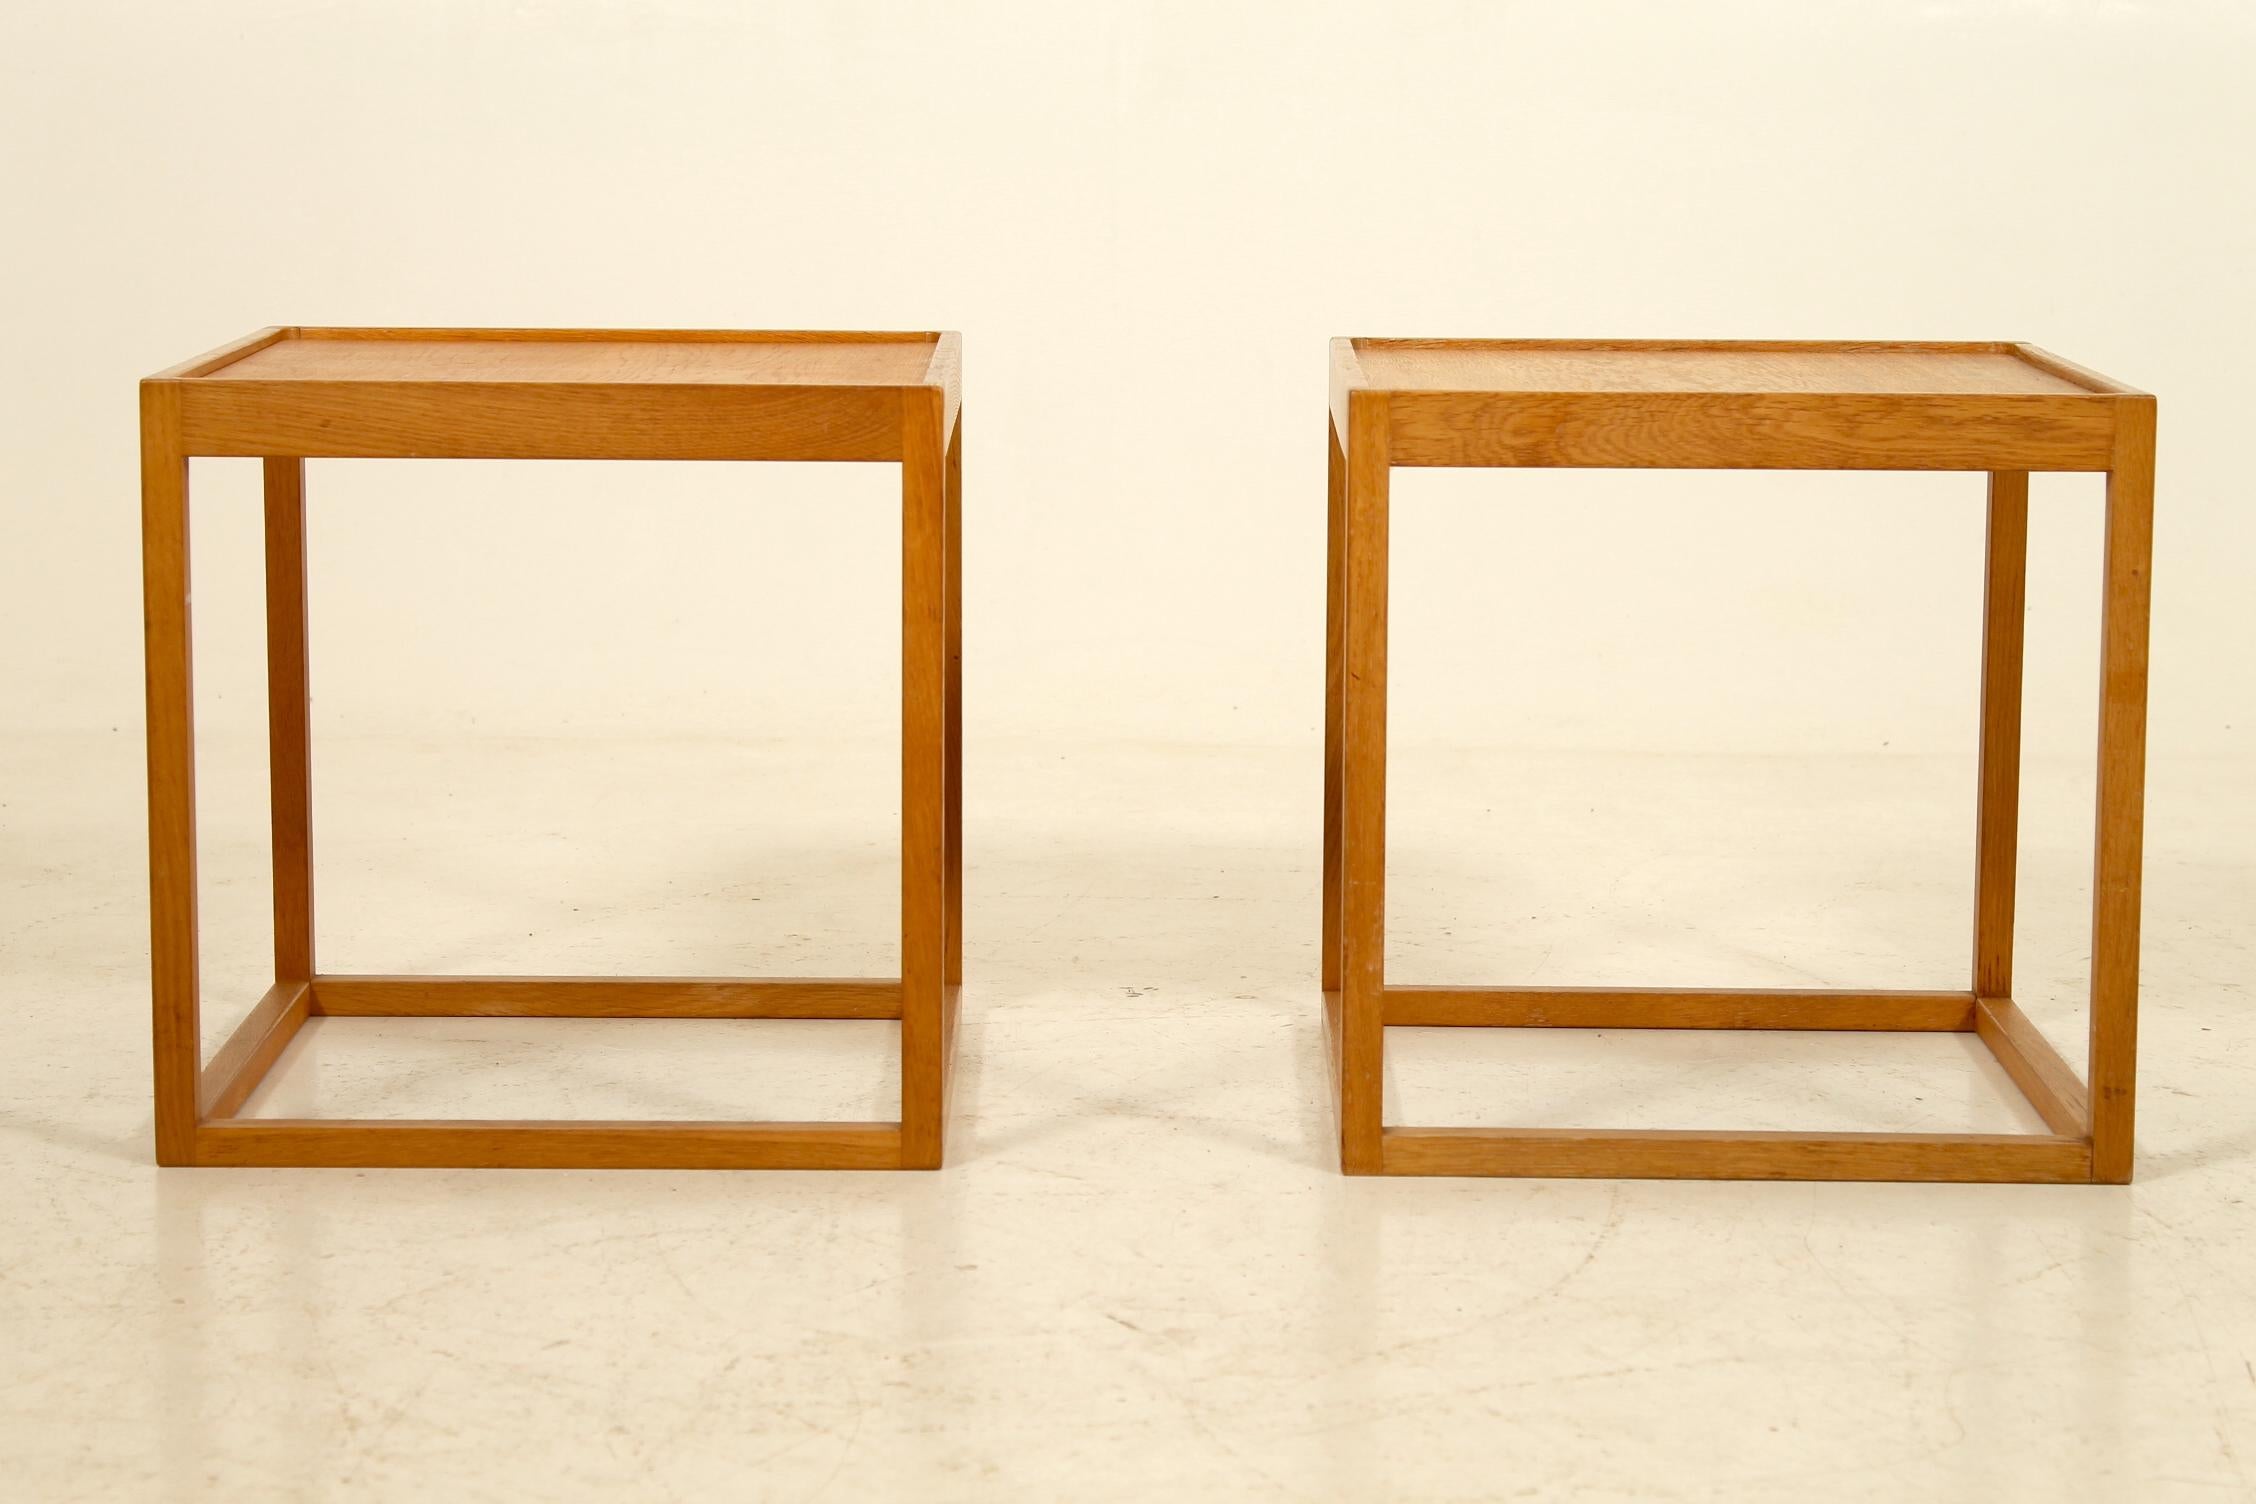 Paire de tables d'appoint en chêne, tables de chevet ou tables de lampe. Bel exemple de design danois minimaliste du milieu des années 1960.
Conçu par Kurt Østervig et fabriqué par Jason Møbler, Danemark.